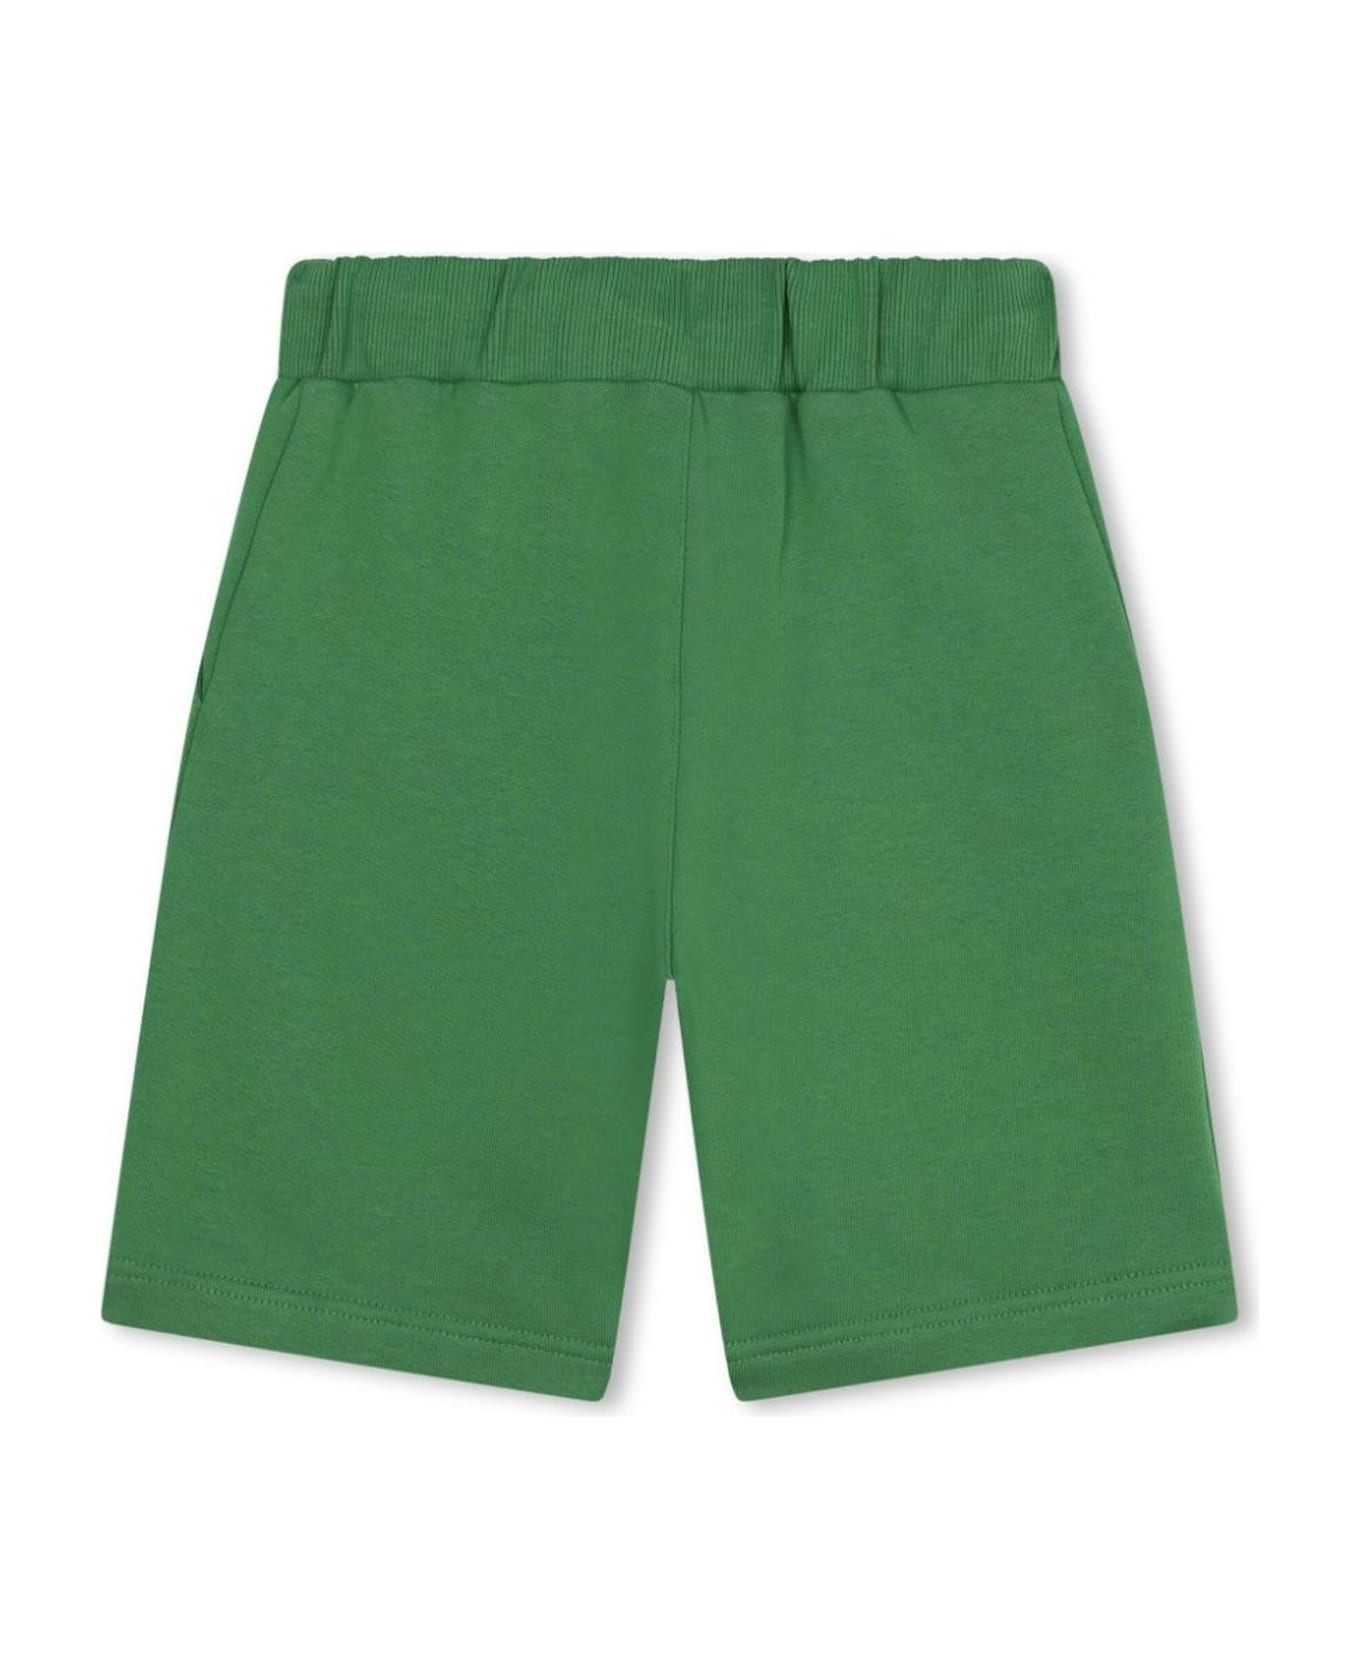 Kenzo Kids Shorts Green - Green